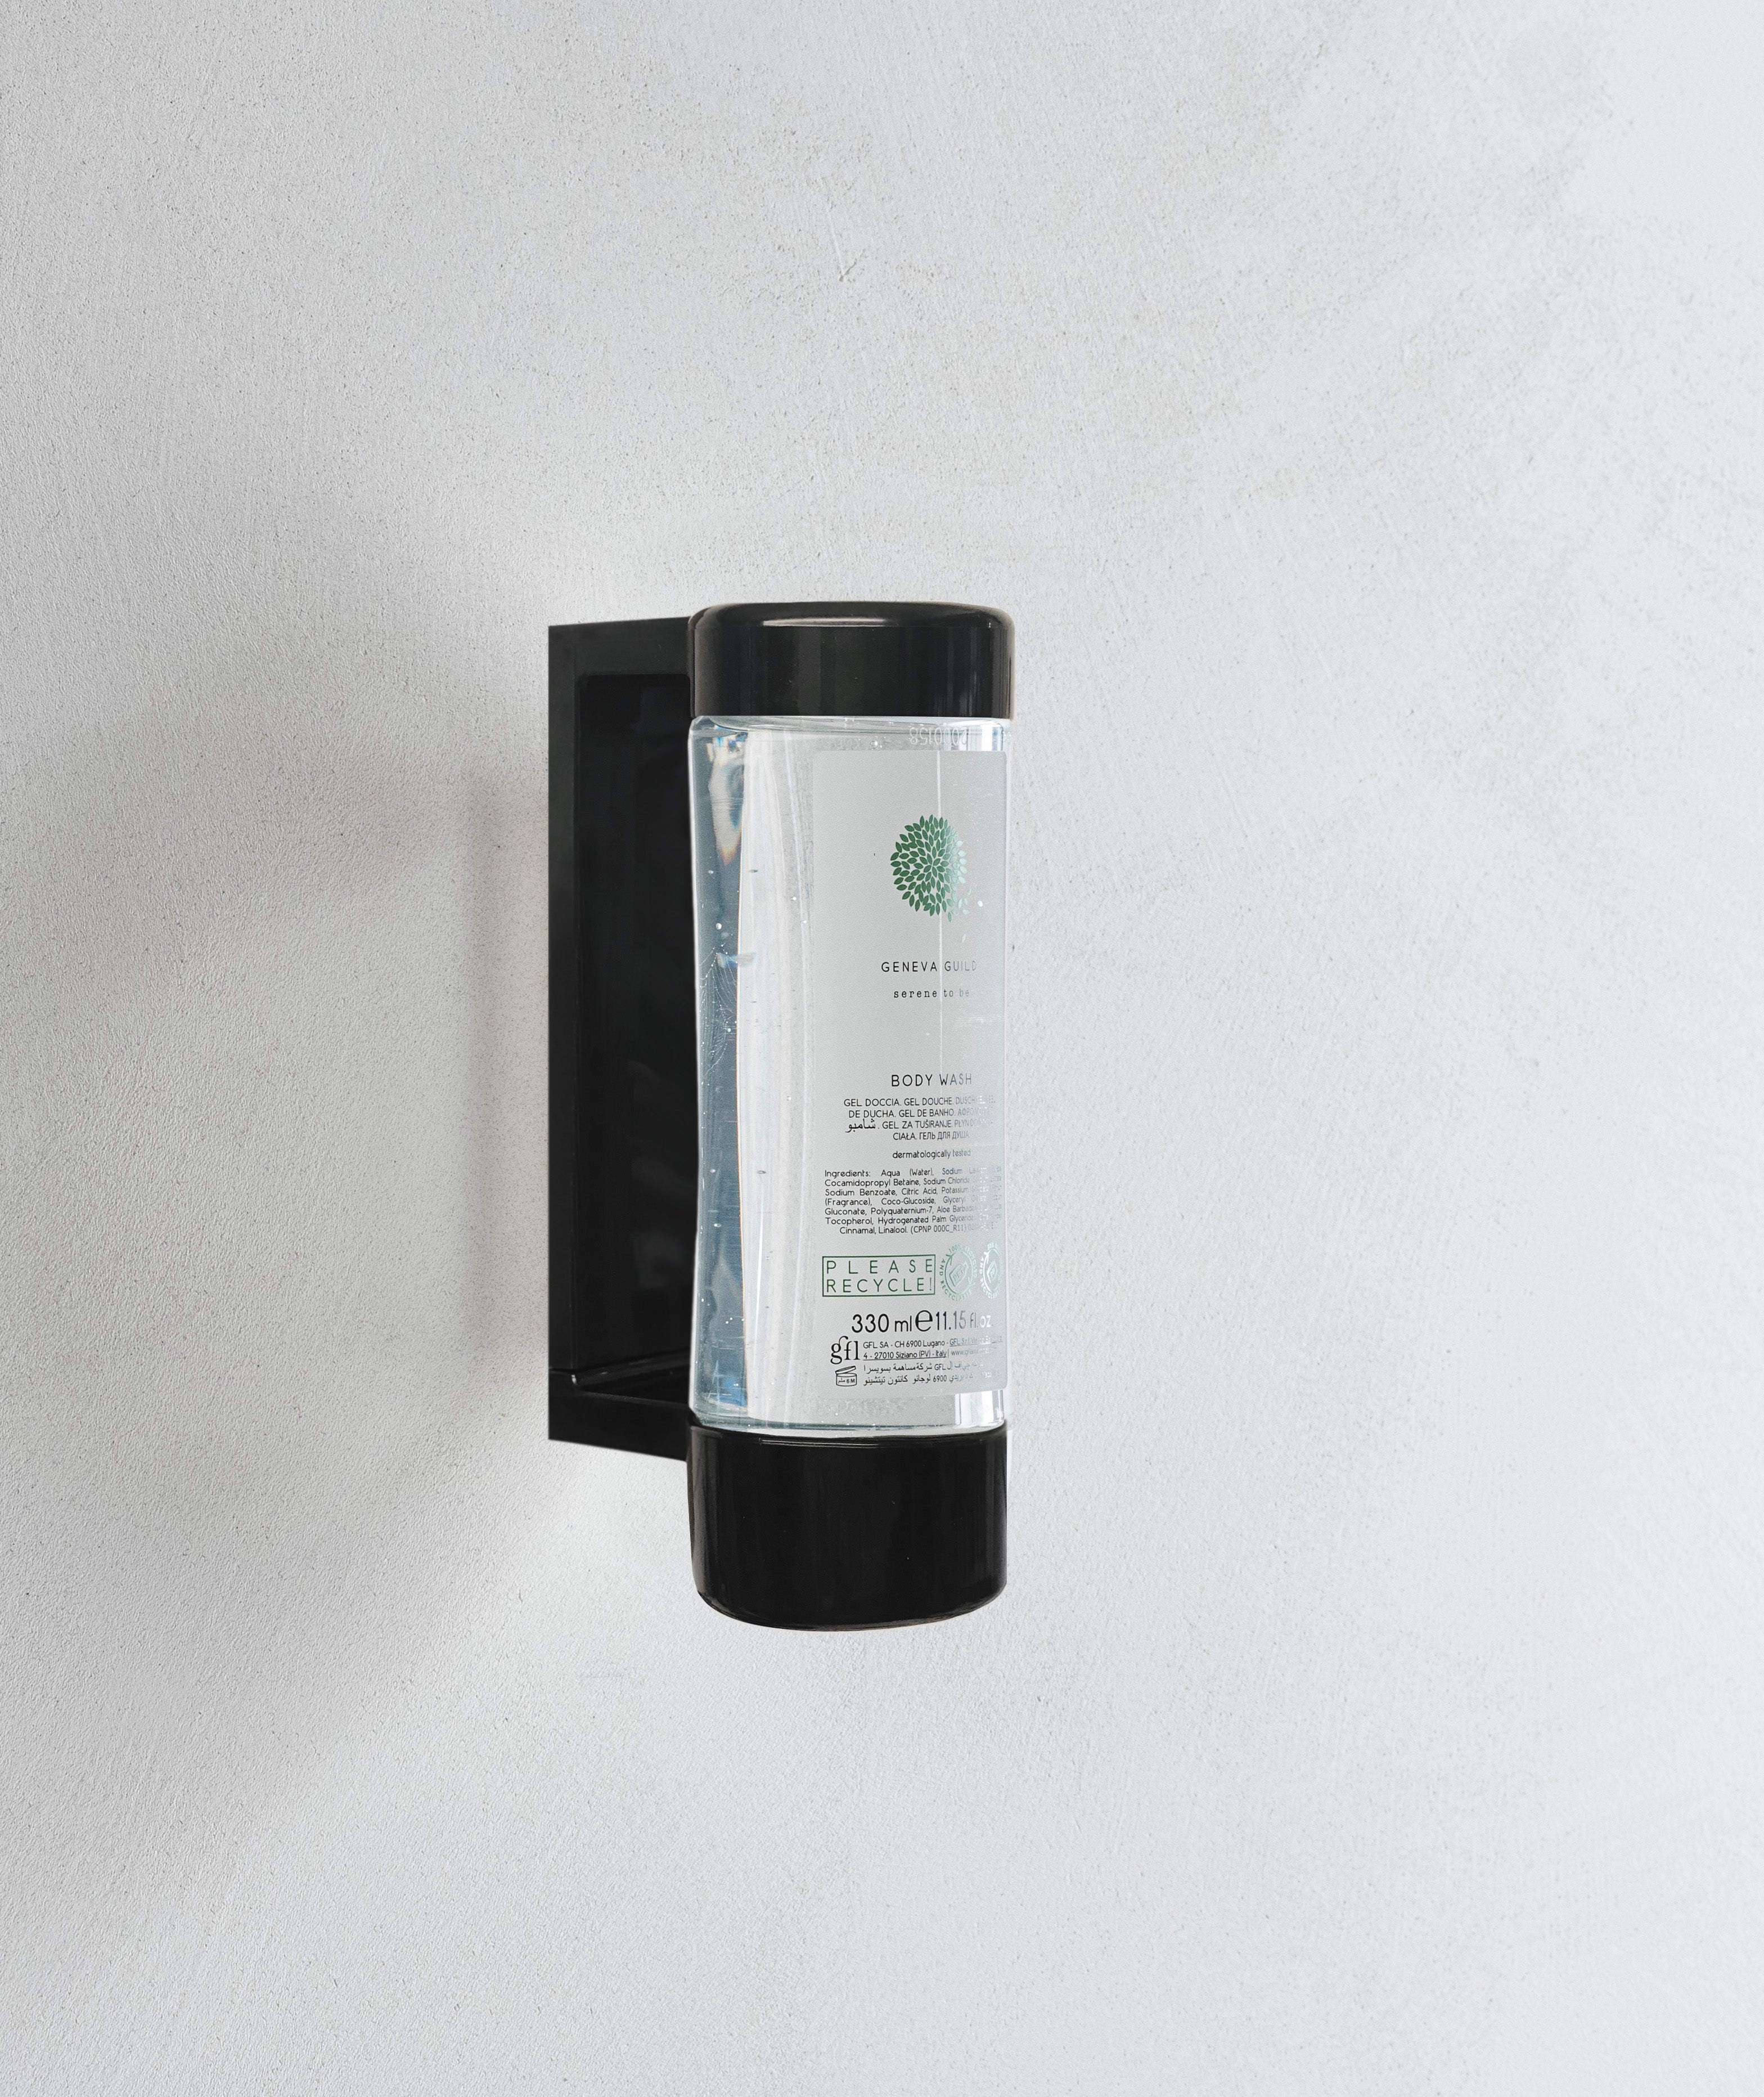 Geneva Guild Body Wash Cartridge For Dispenser (330 ml) - 24Pack